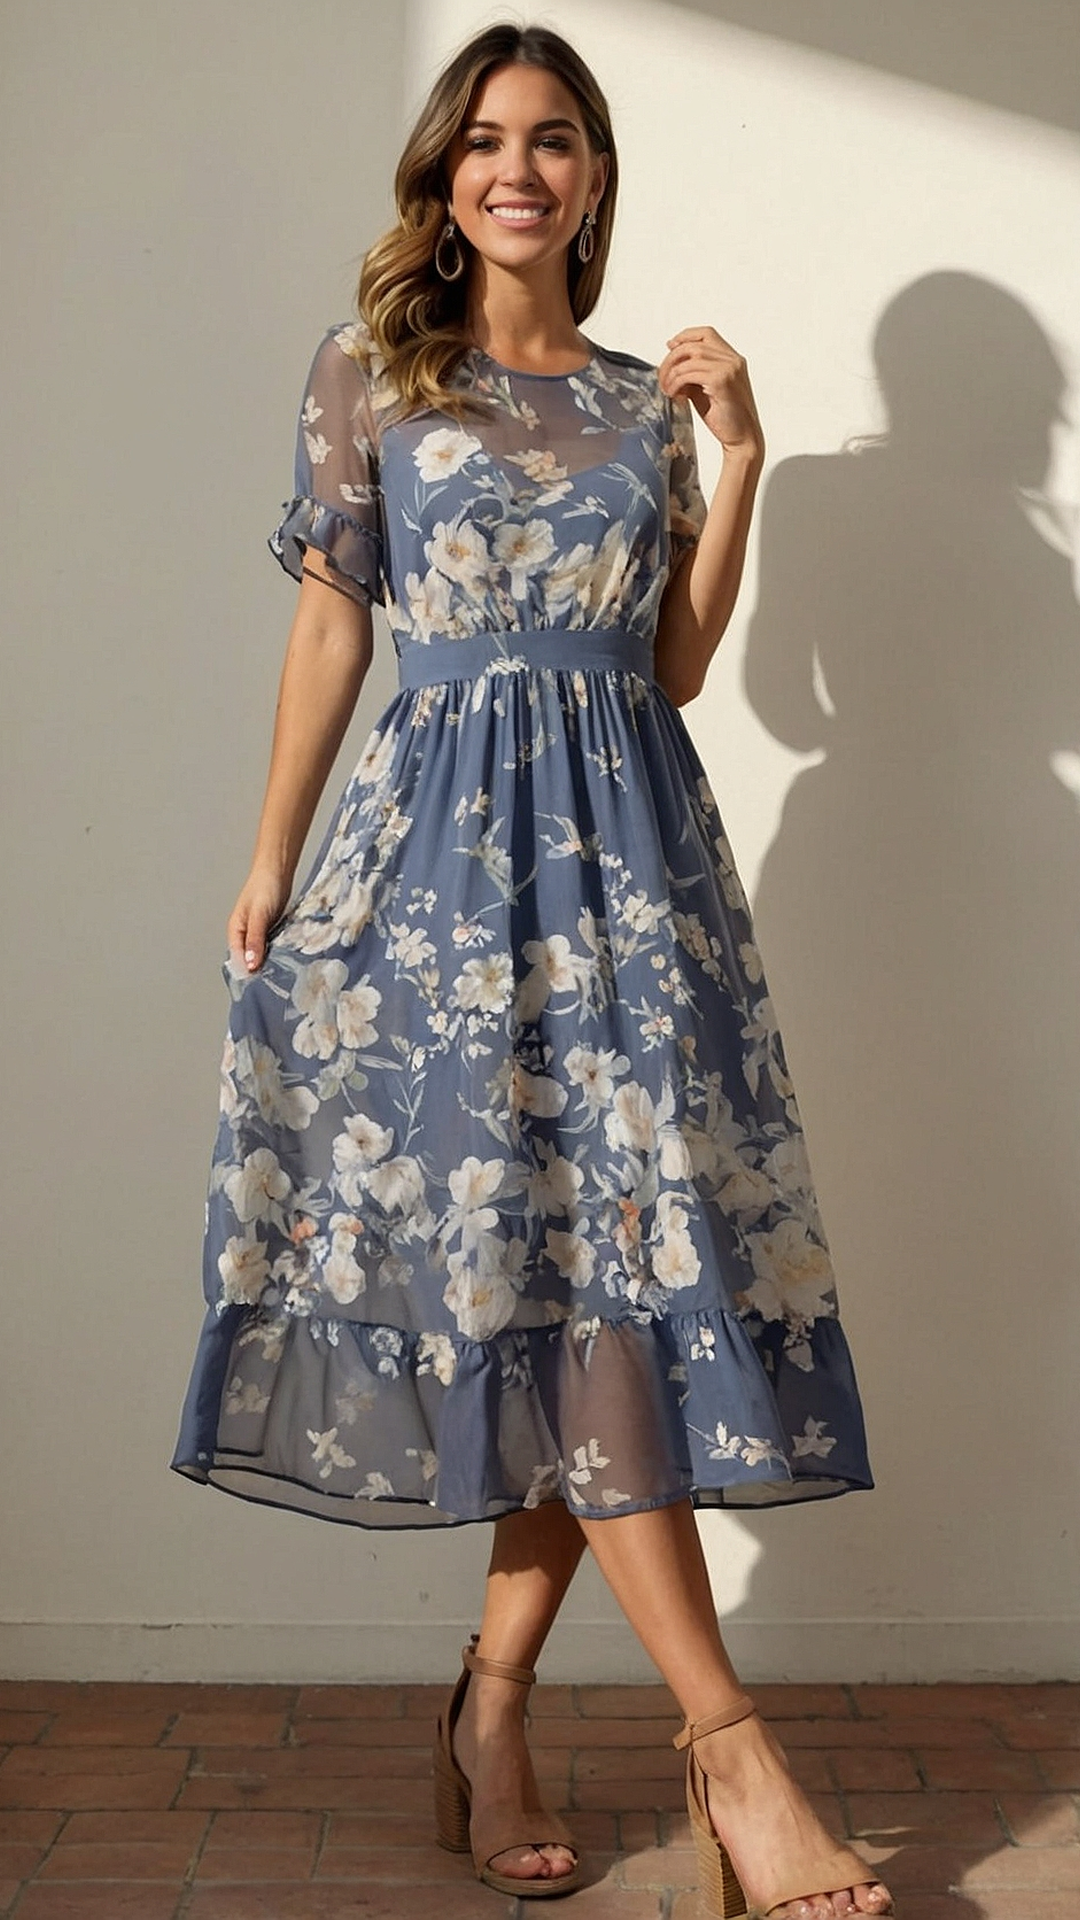 Petals and Prints: Floral Maxi Dress Suggestions